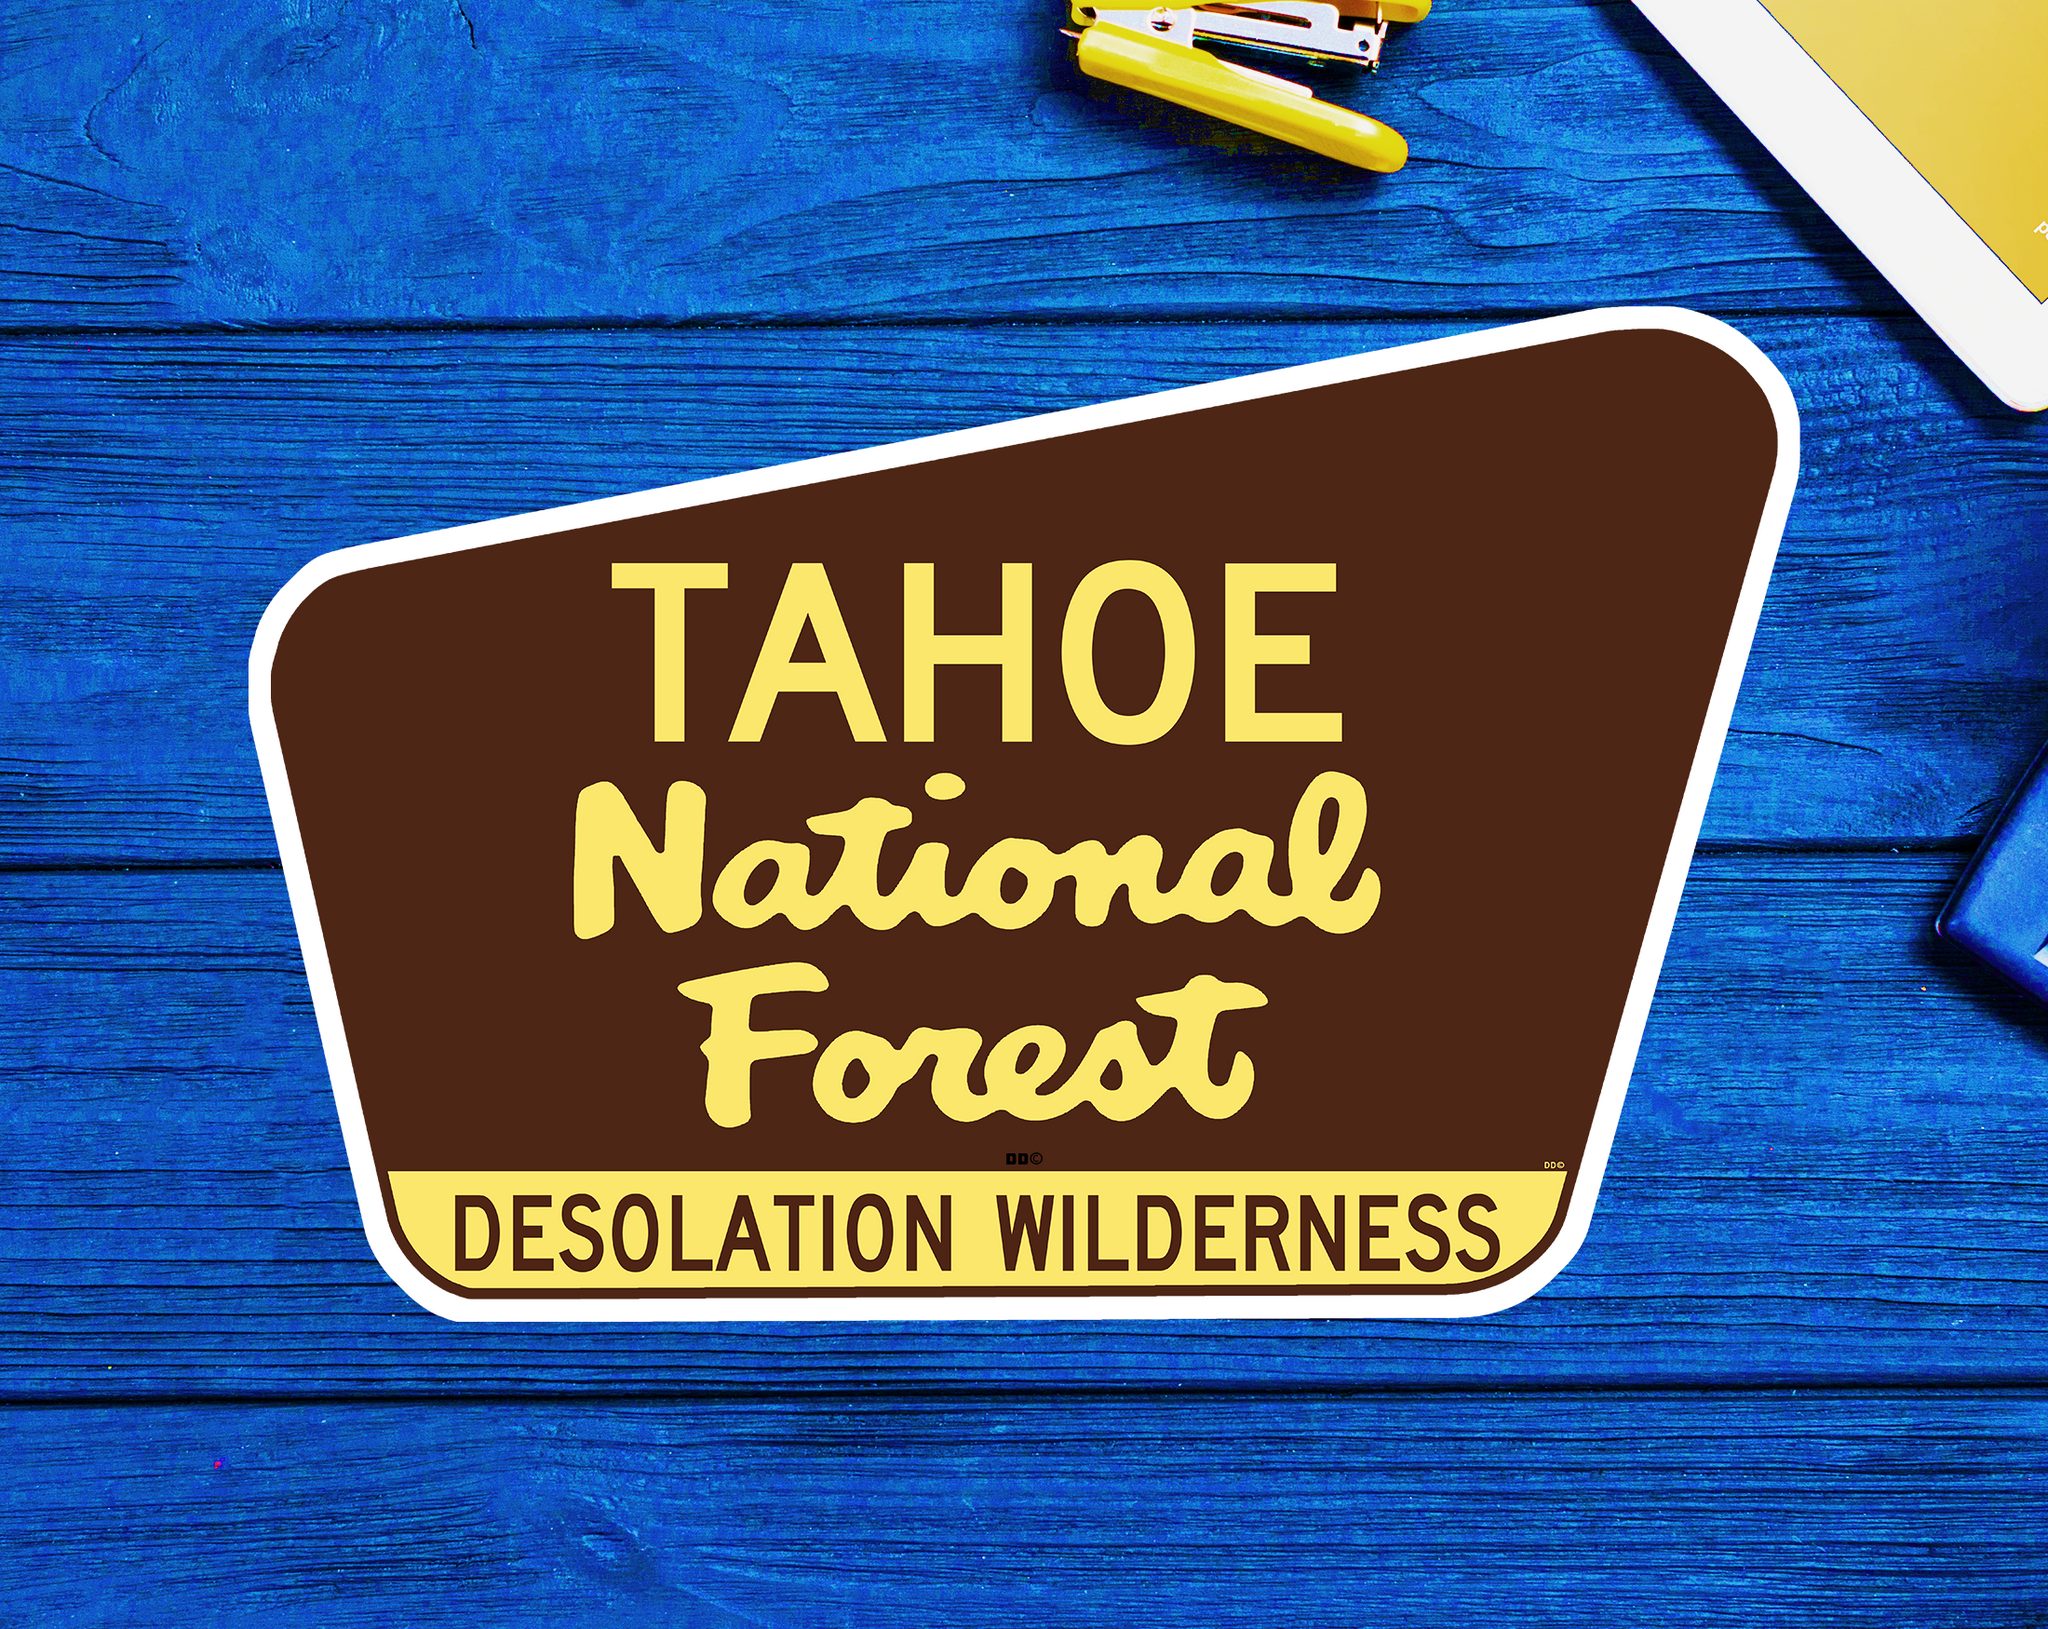 50 Tahoe National Forest Desolation Wilderness Decals